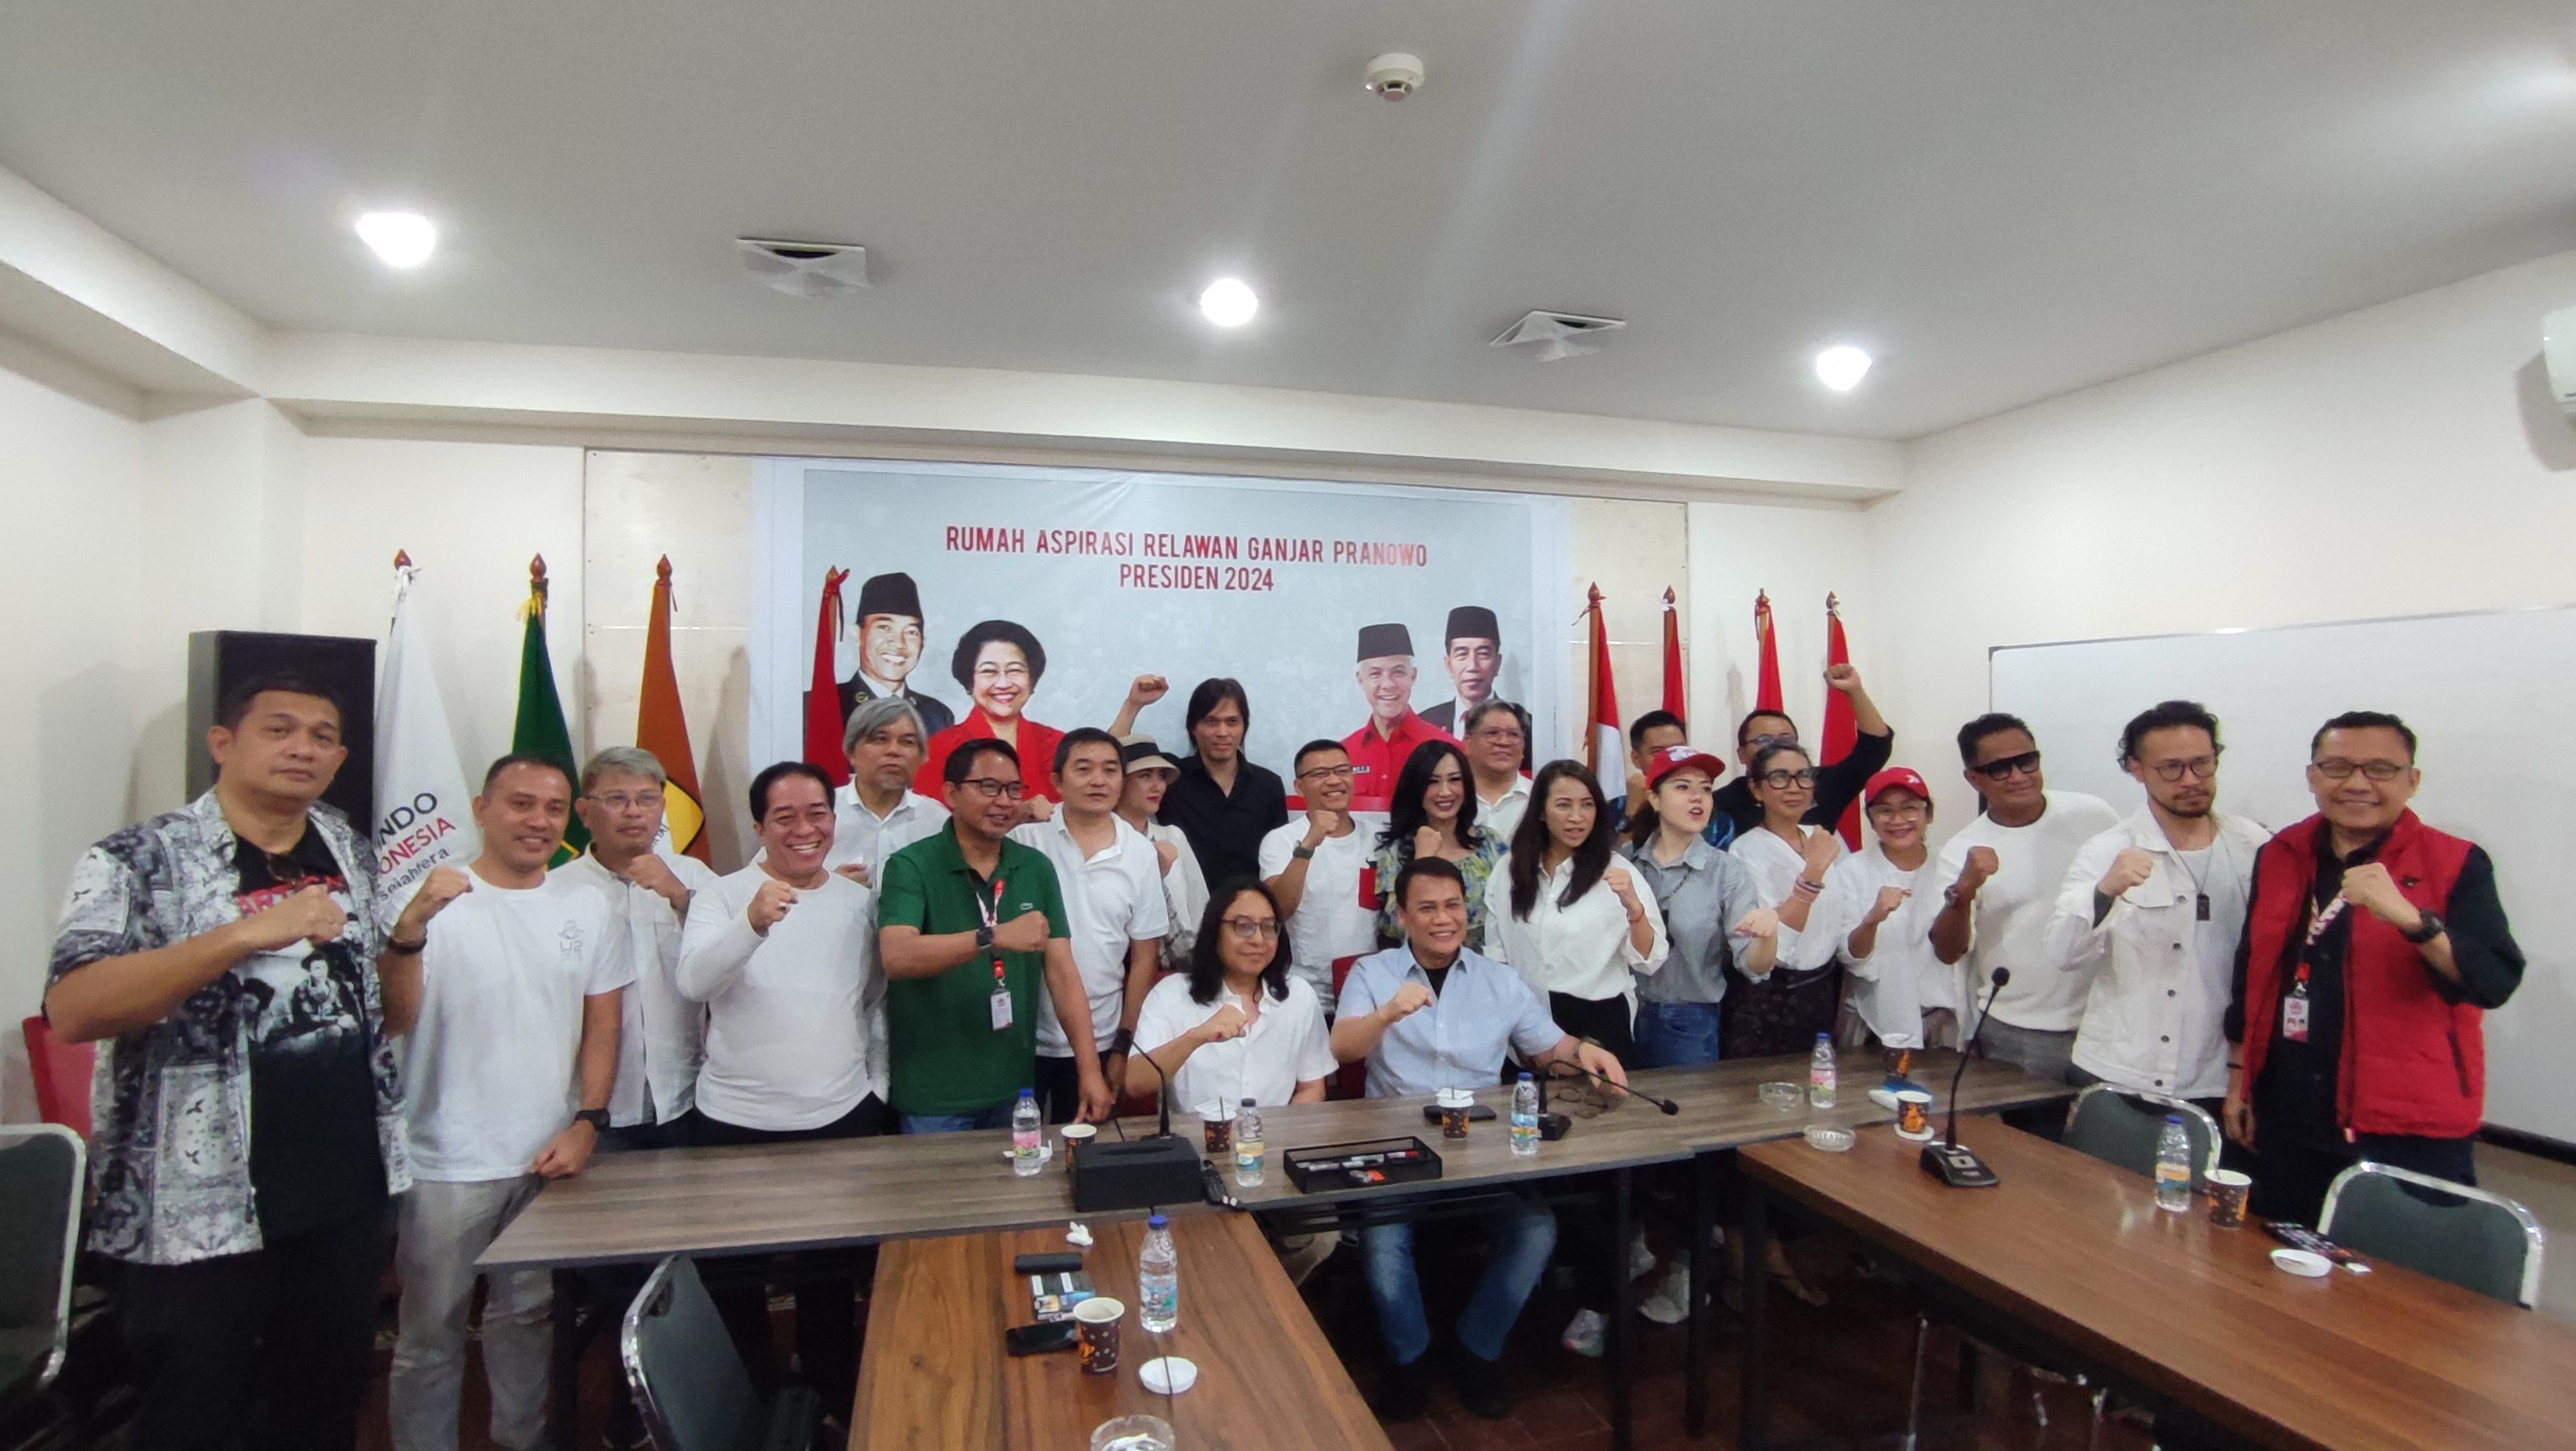 PDI-P Terima Deklarasi Dukungan Relawan Extravaganjar, Isinya Selebritis dan Seniman